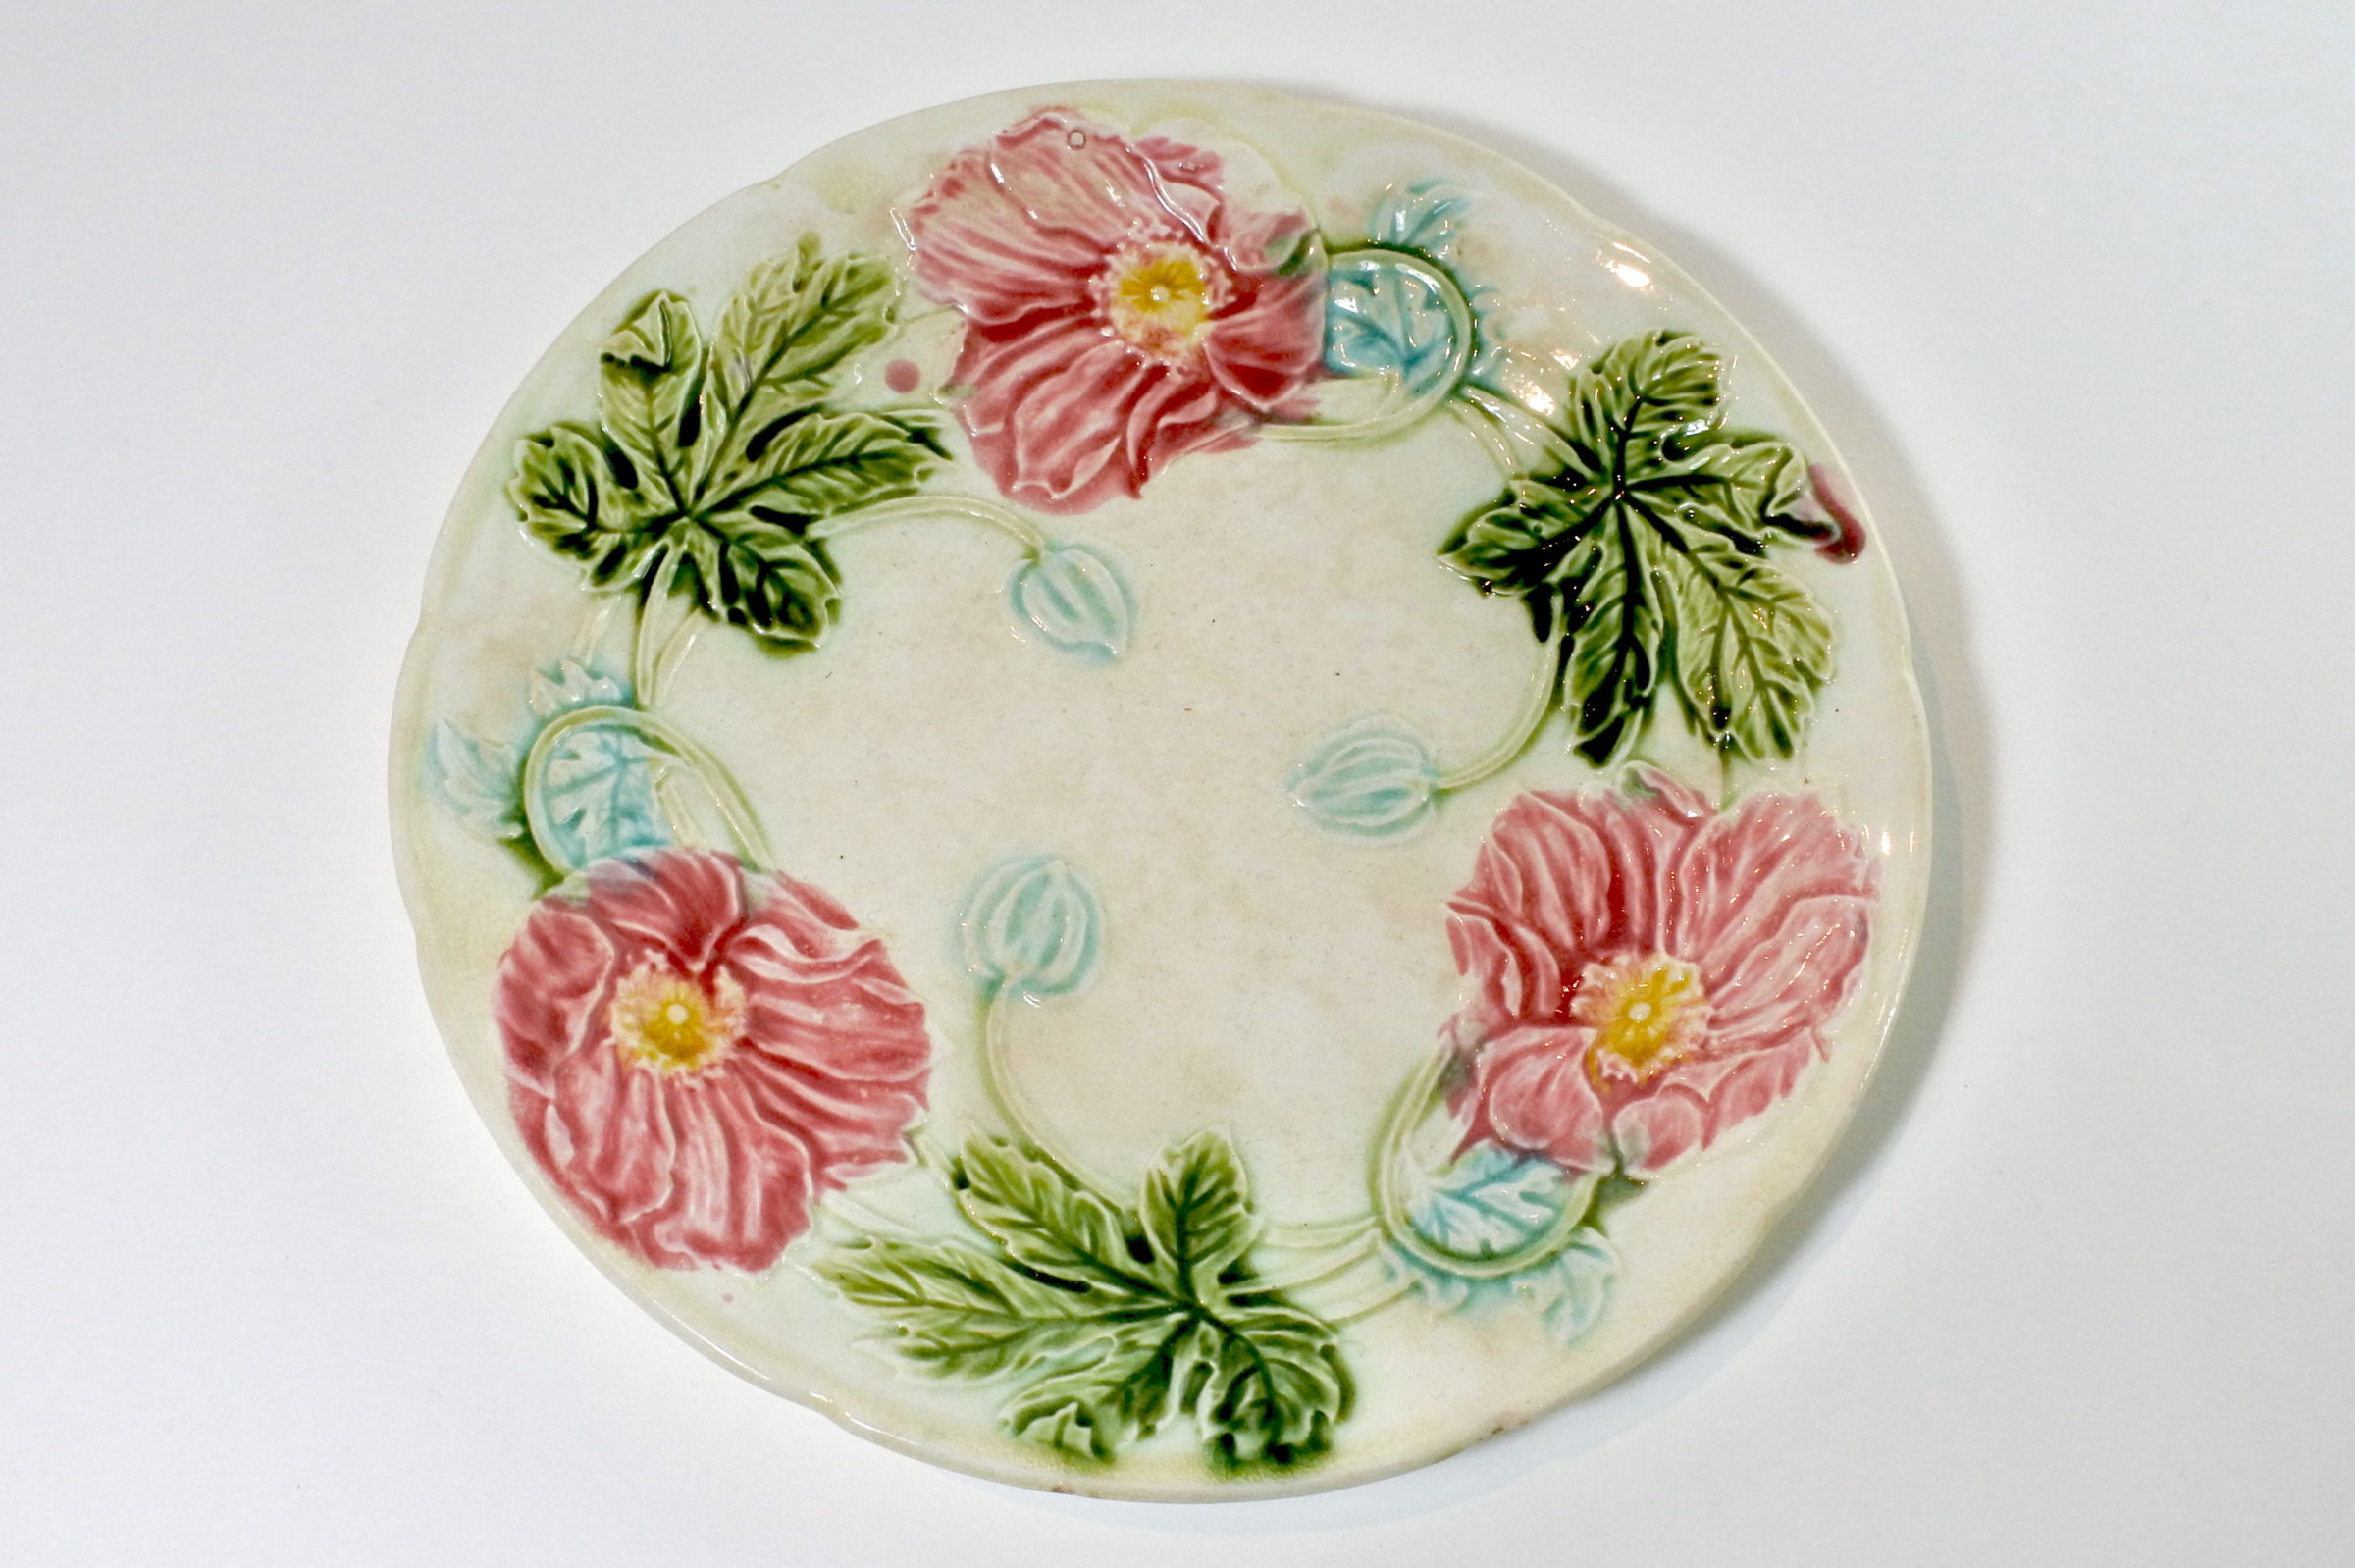 Piatto in ceramica barbotine con fiori - Diametro 21 cm